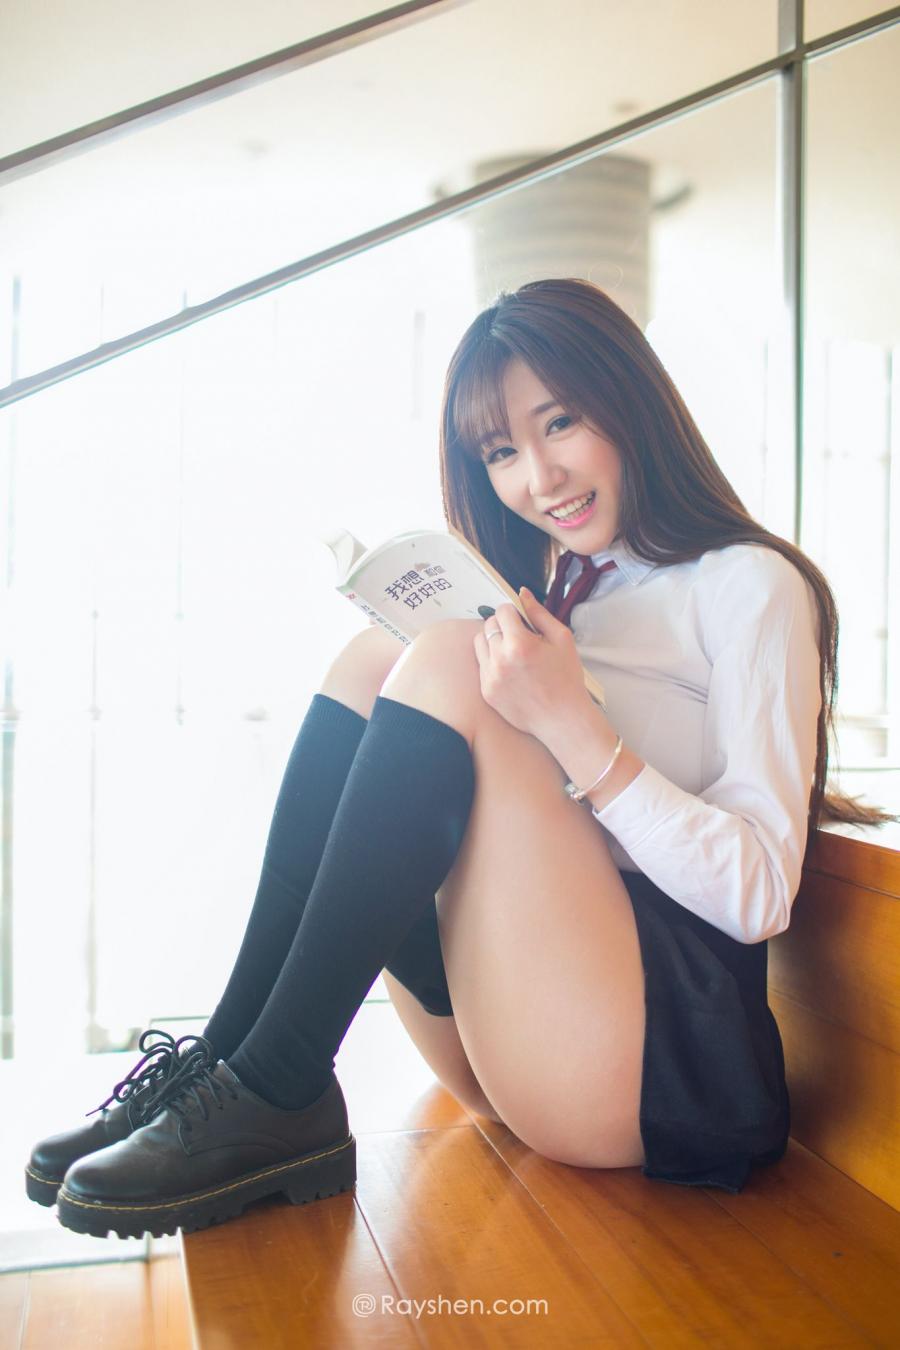 Cute Girl Zhang Fei Fei School Uniform Picture and Photo